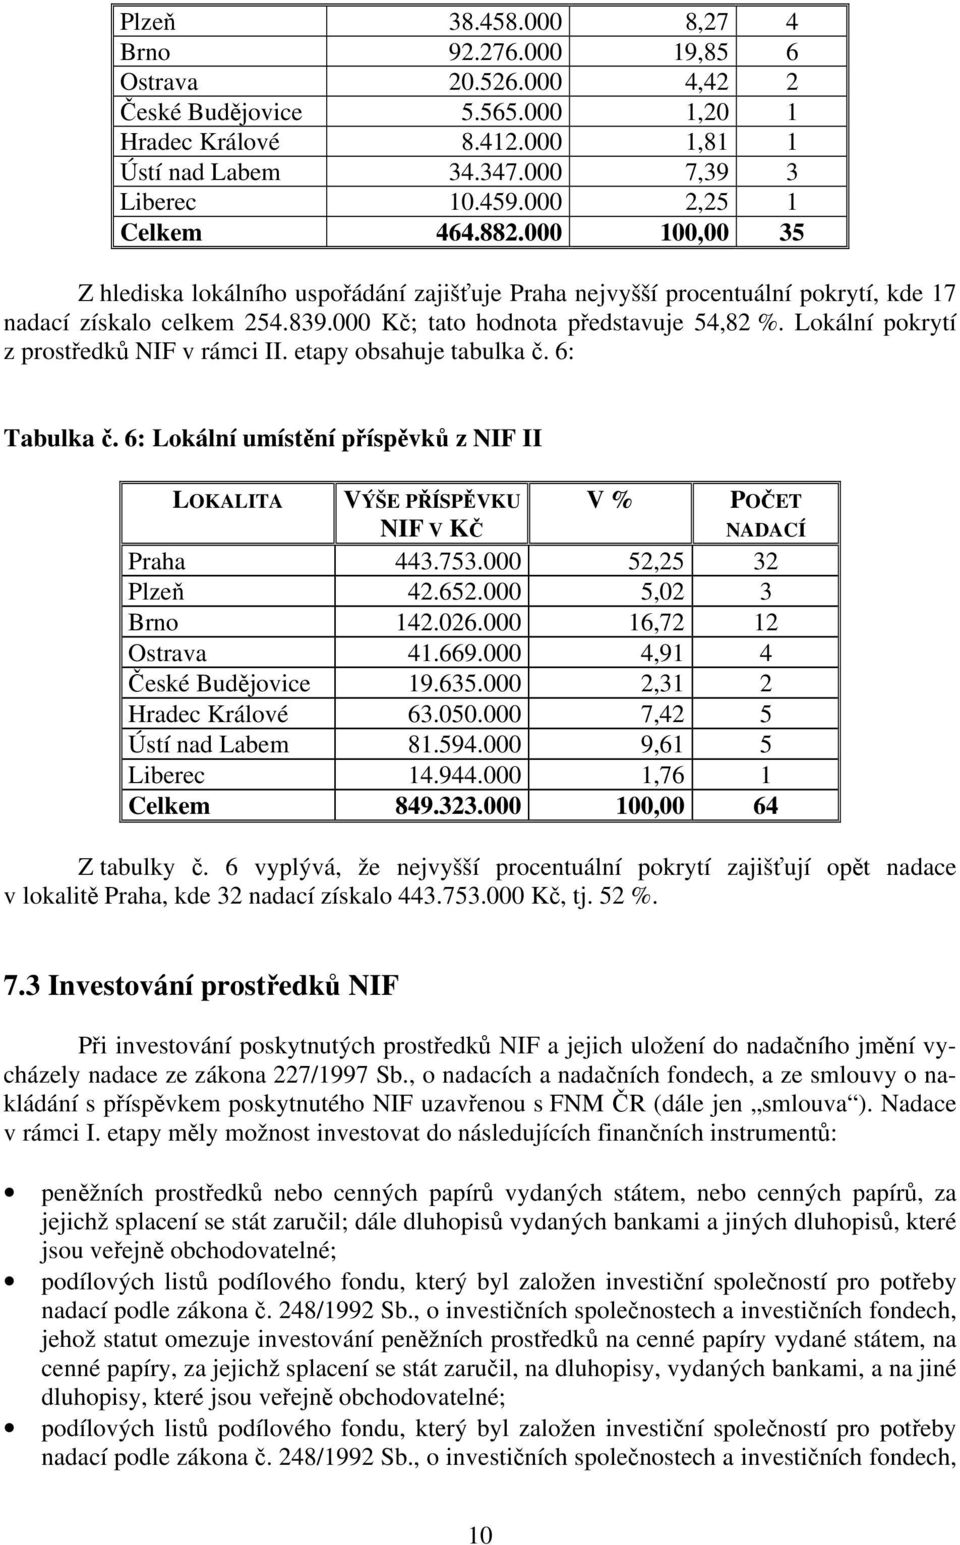 Lokální pokrytí z prostředků NIF v rámci II. etapy obsahuje tabulka č. 6: Tabulka č. 6: Lokální umístění příspěvků z NIF II LOKALITA VÝŠE PŘÍSPĚVKU NIF V KČ V % POČET NADACÍ Praha 443.753.